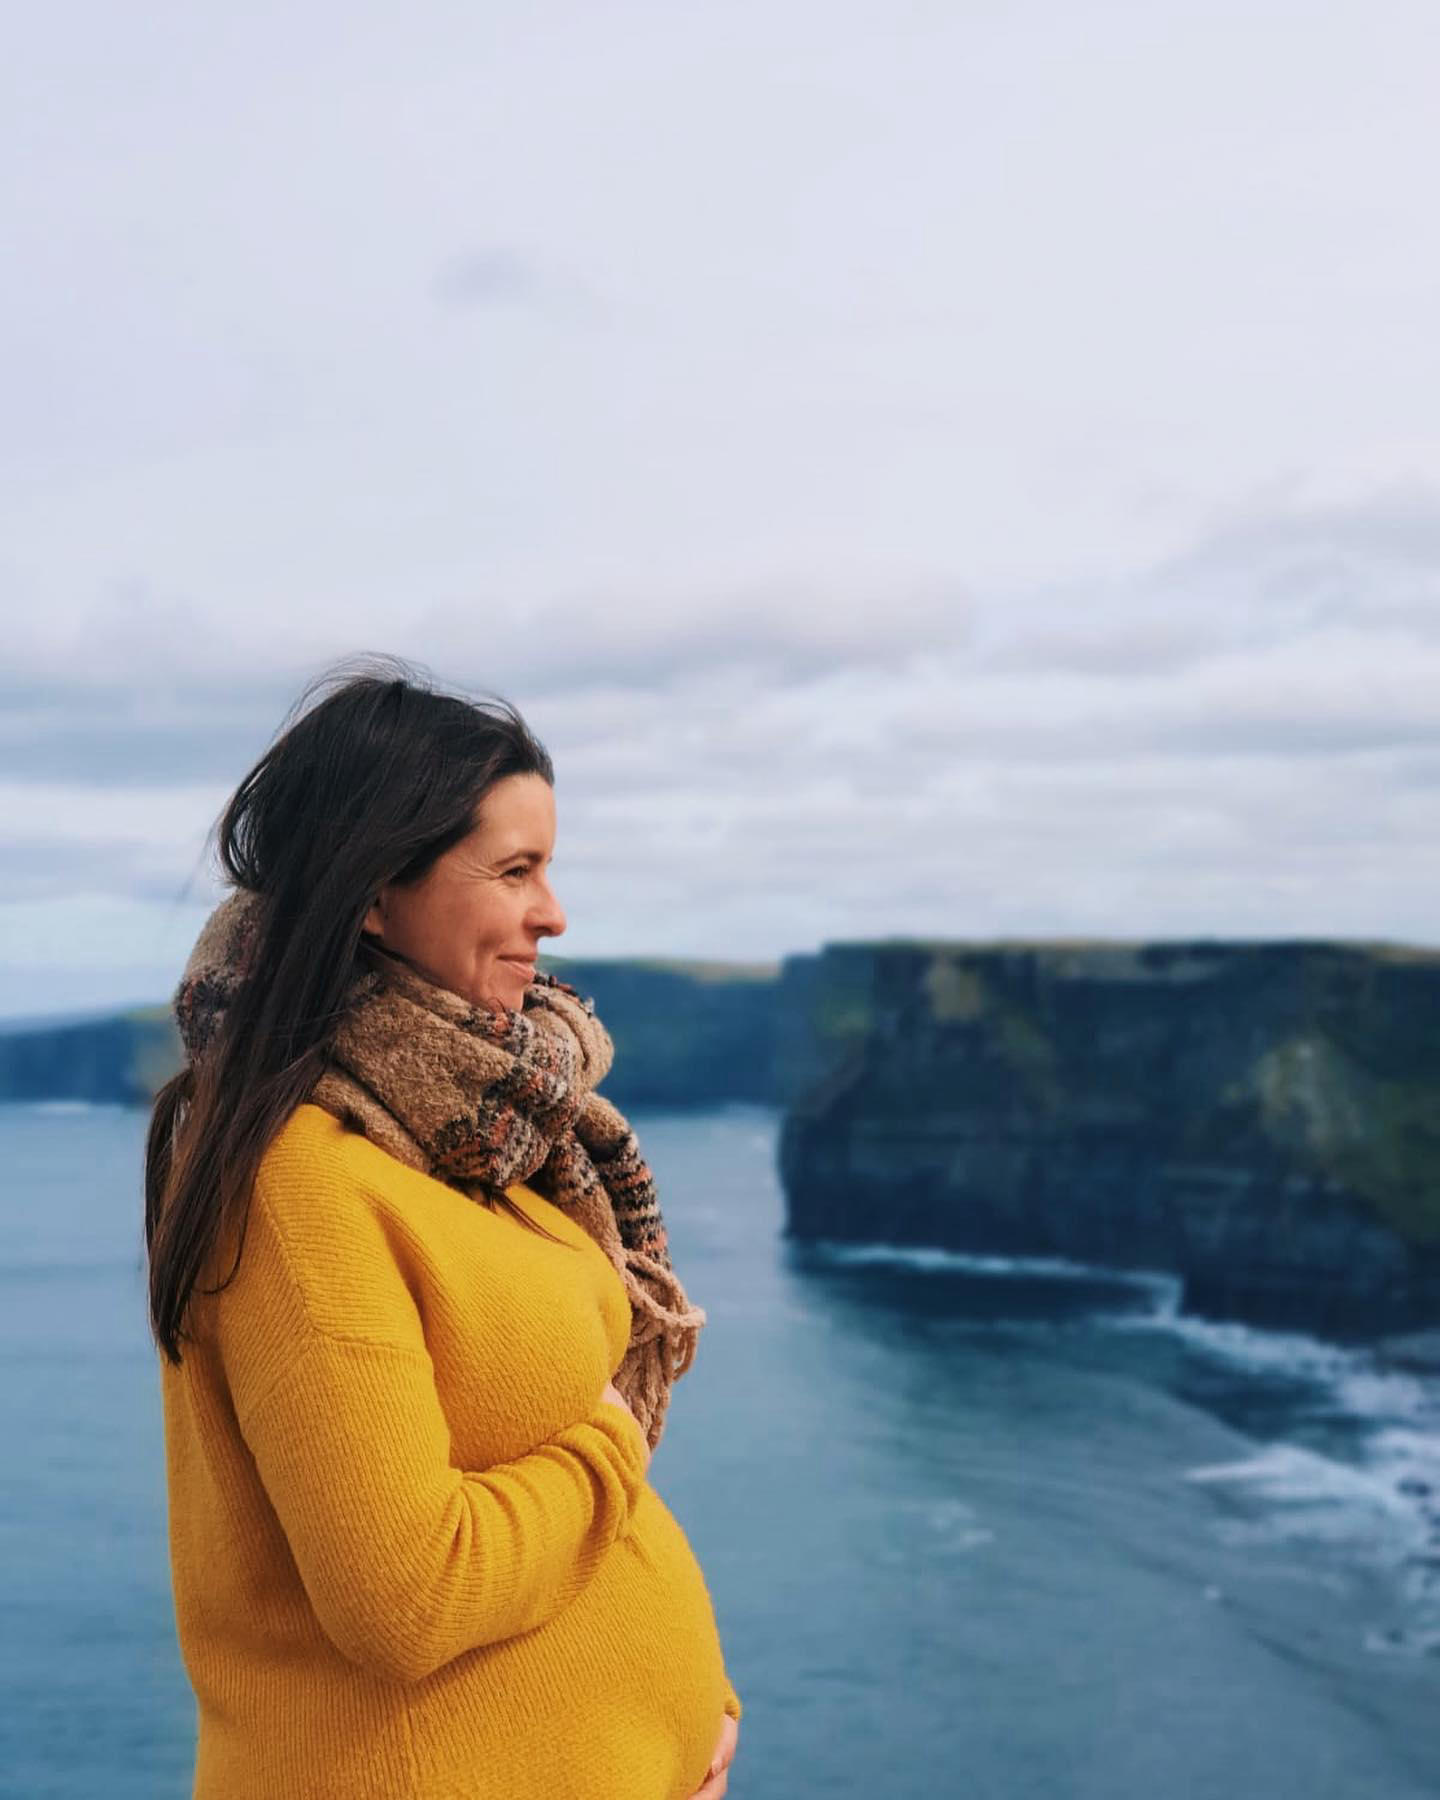 🇮🇪 Irlande 🇮🇪 Quelques jours de vacances qui m’ont fait le plus grand bien, mettre tout sur paus